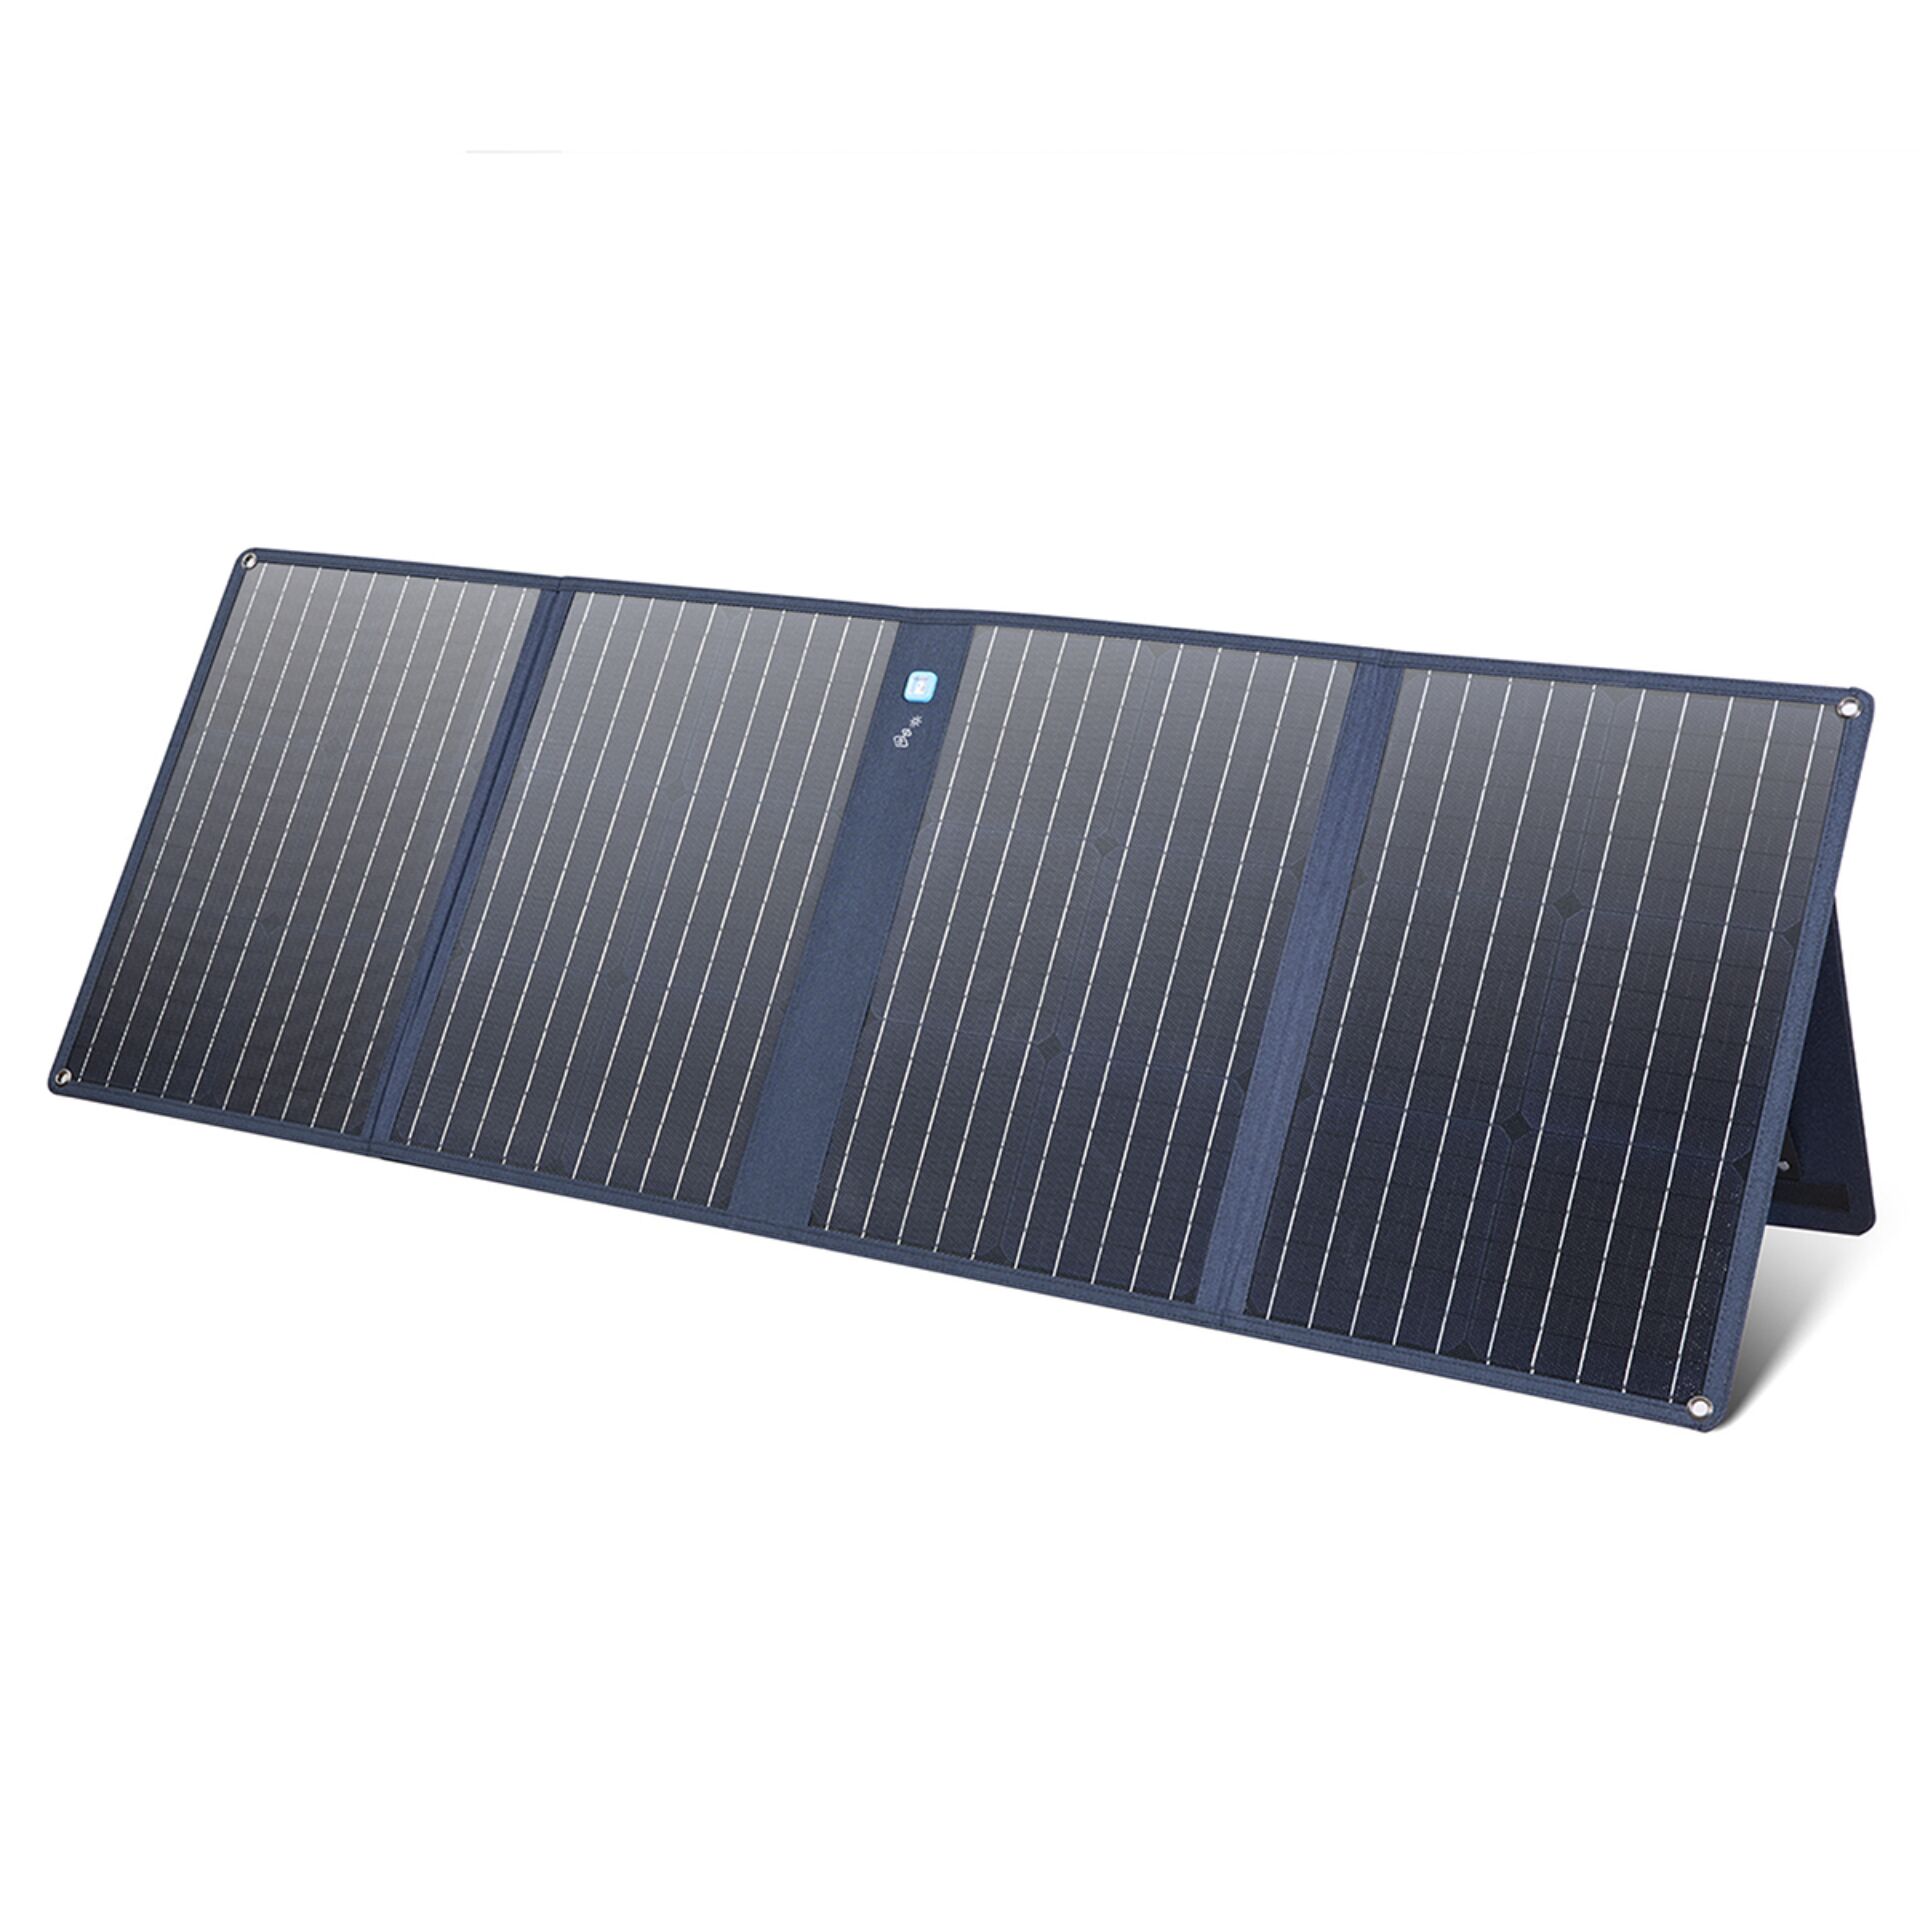 Anker 625 Solarpanel mit verstellbarer Halterung kompakte 100W Solaranlage, kompatibel mit Powerhouse